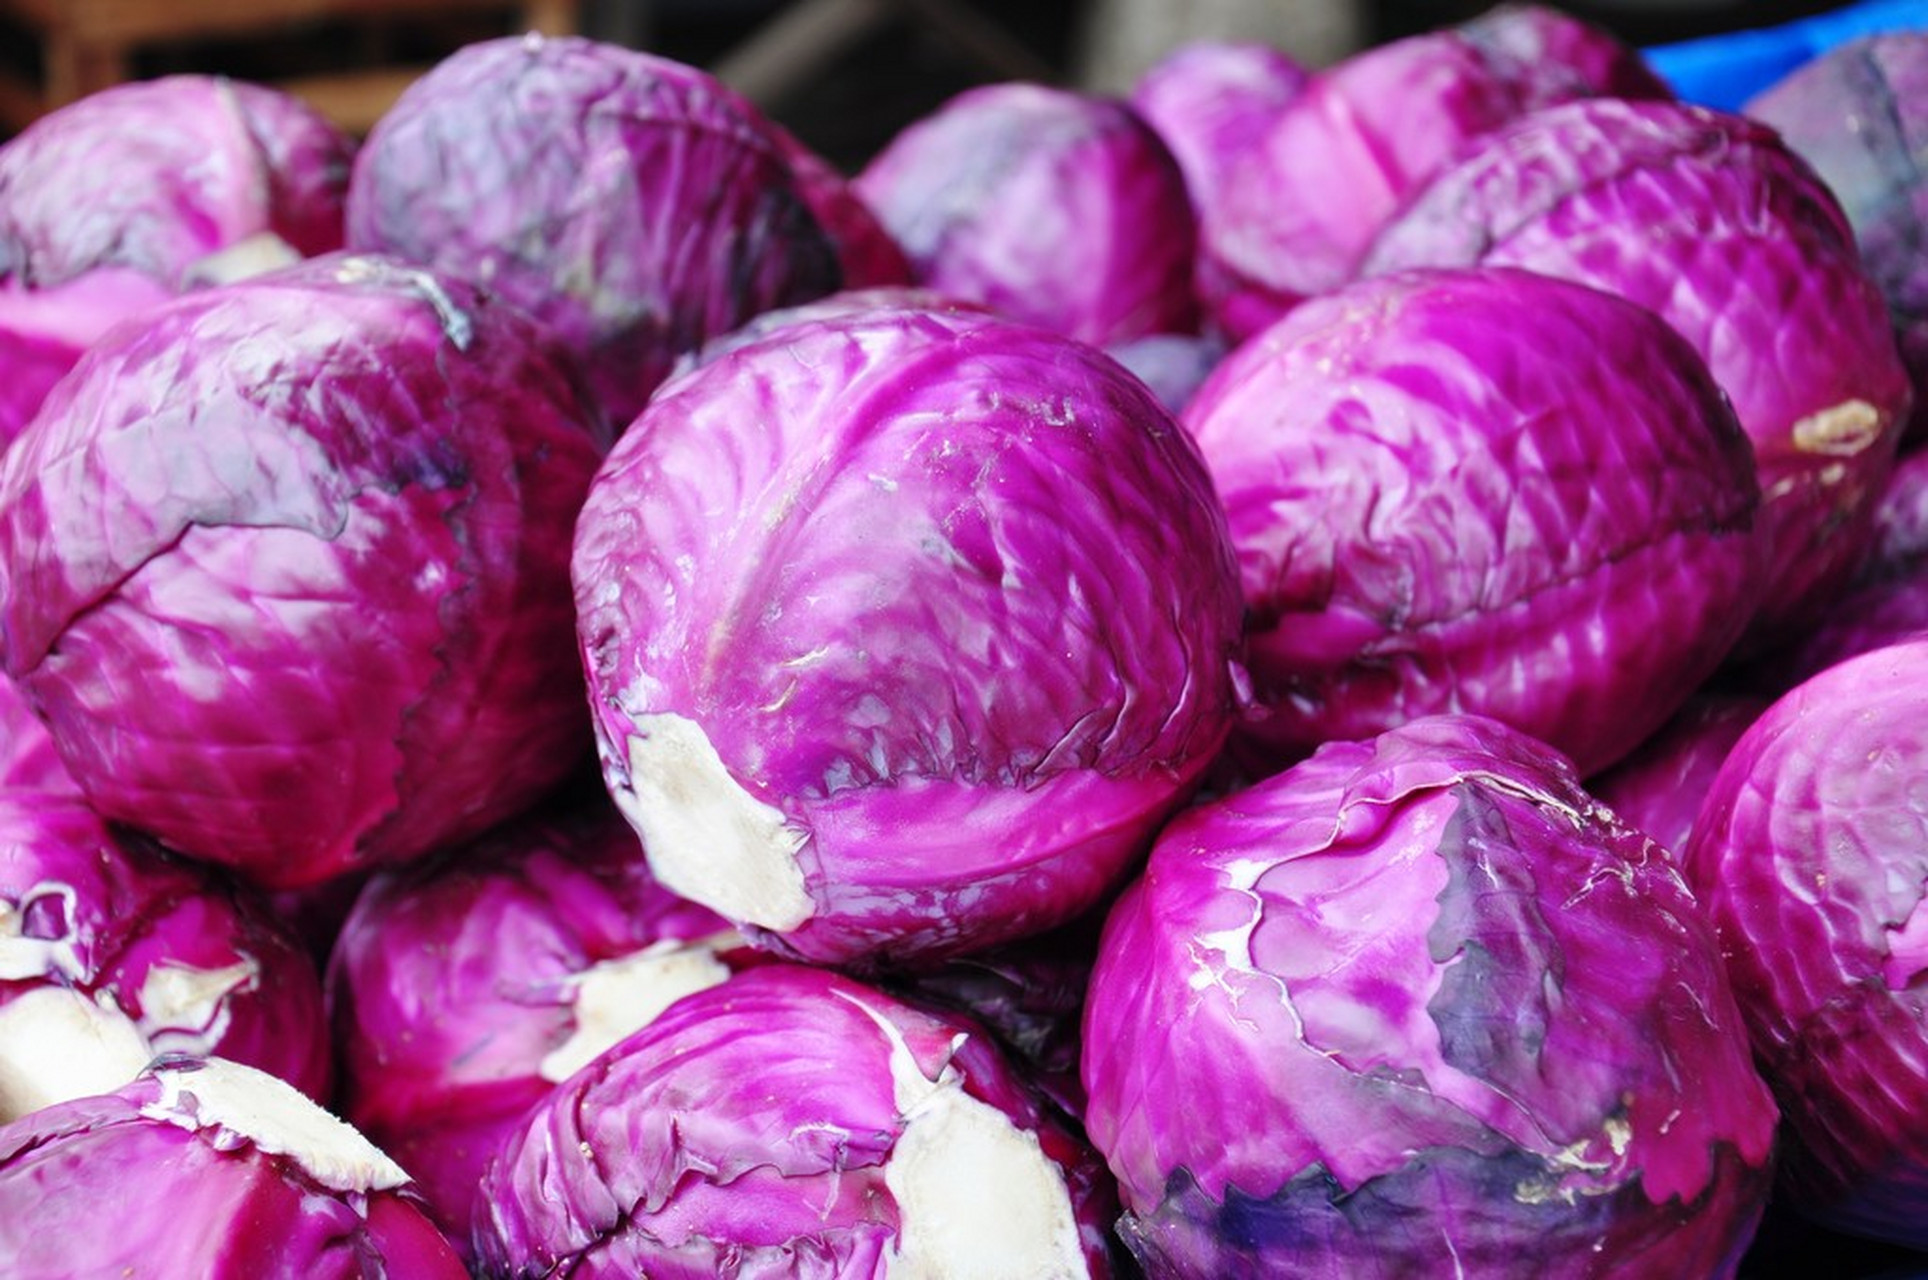 甘蓝  紫甘蓝俗称紫包菜,也叫紫圆白菜,长得跟圆白菜很像,就是紫色的